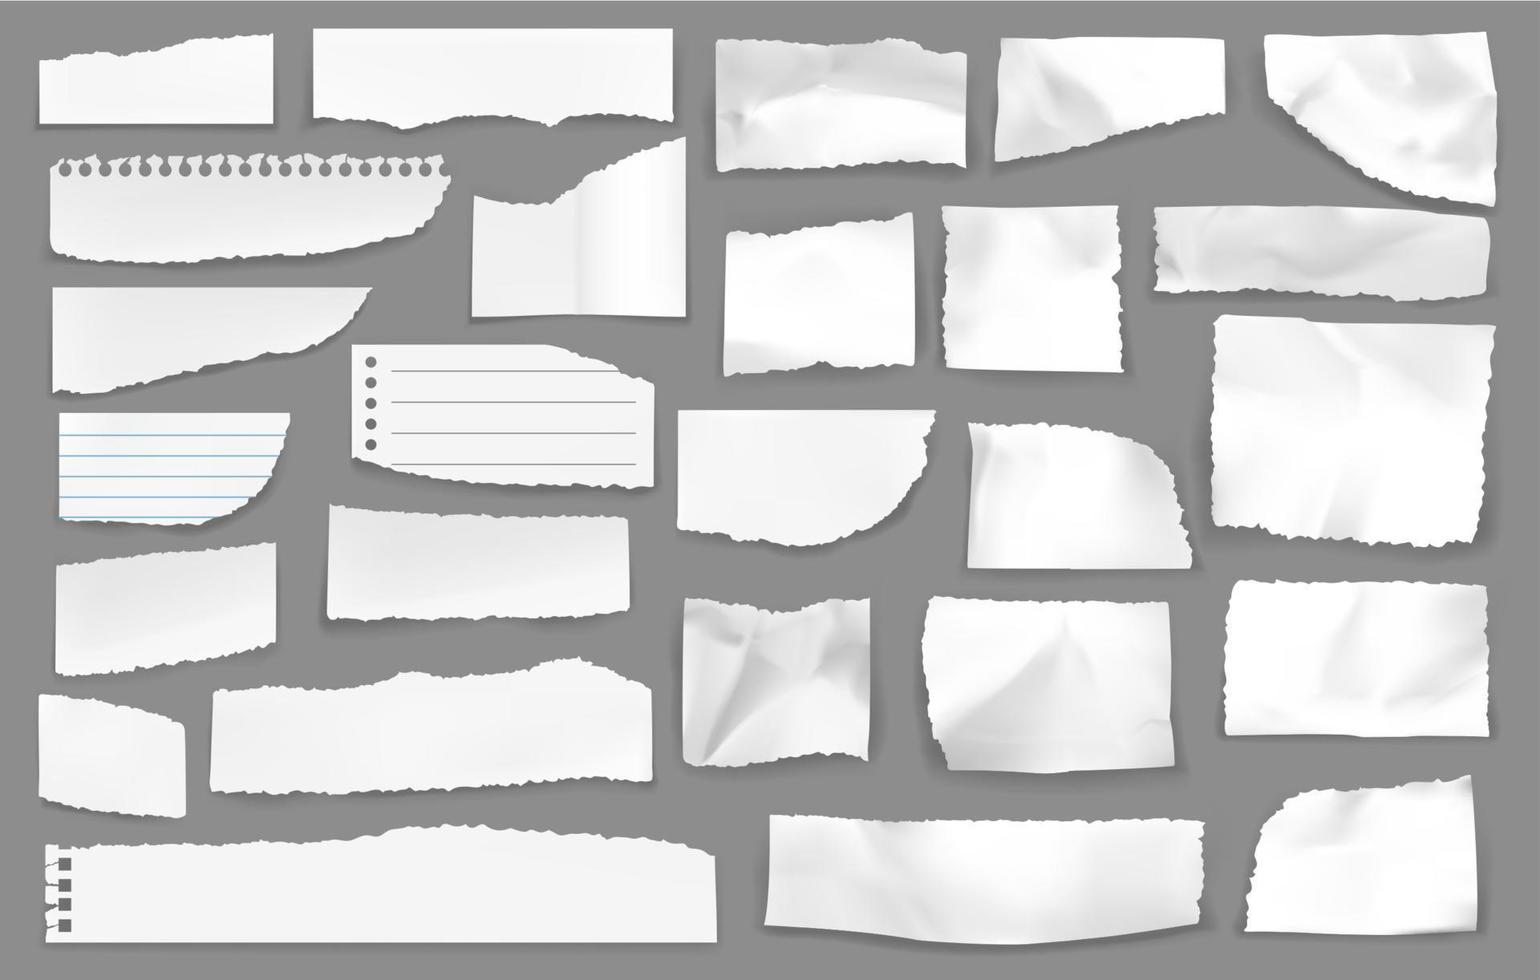 blanco Rasgado papel q.e.p.d piezas, vector chatarra conjunto